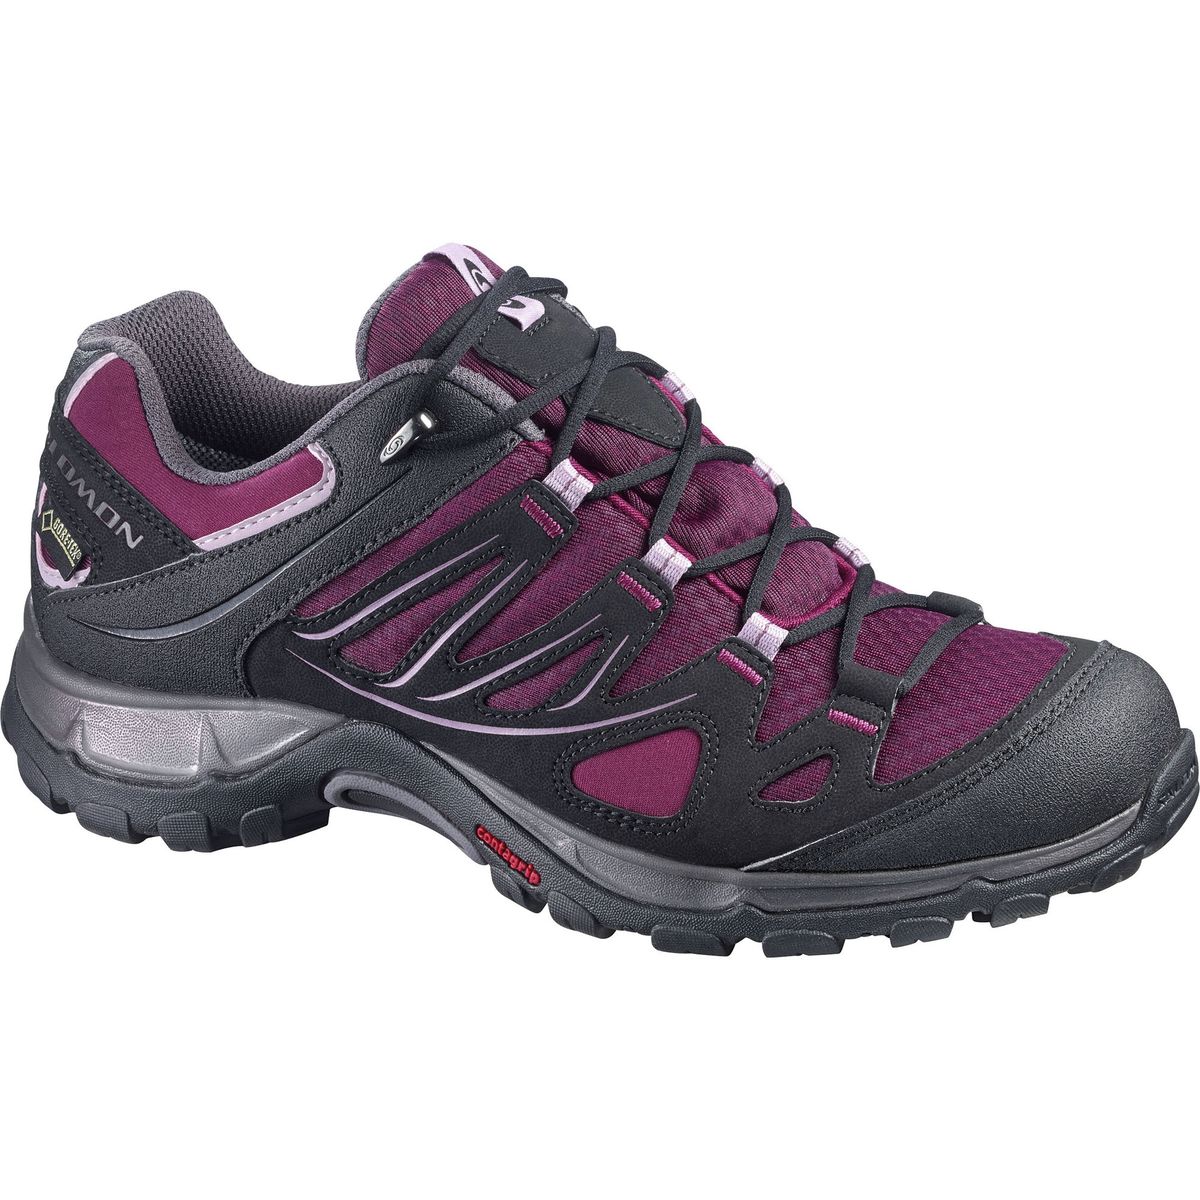 Ellipse GTX Hiking - Women's - Footwear